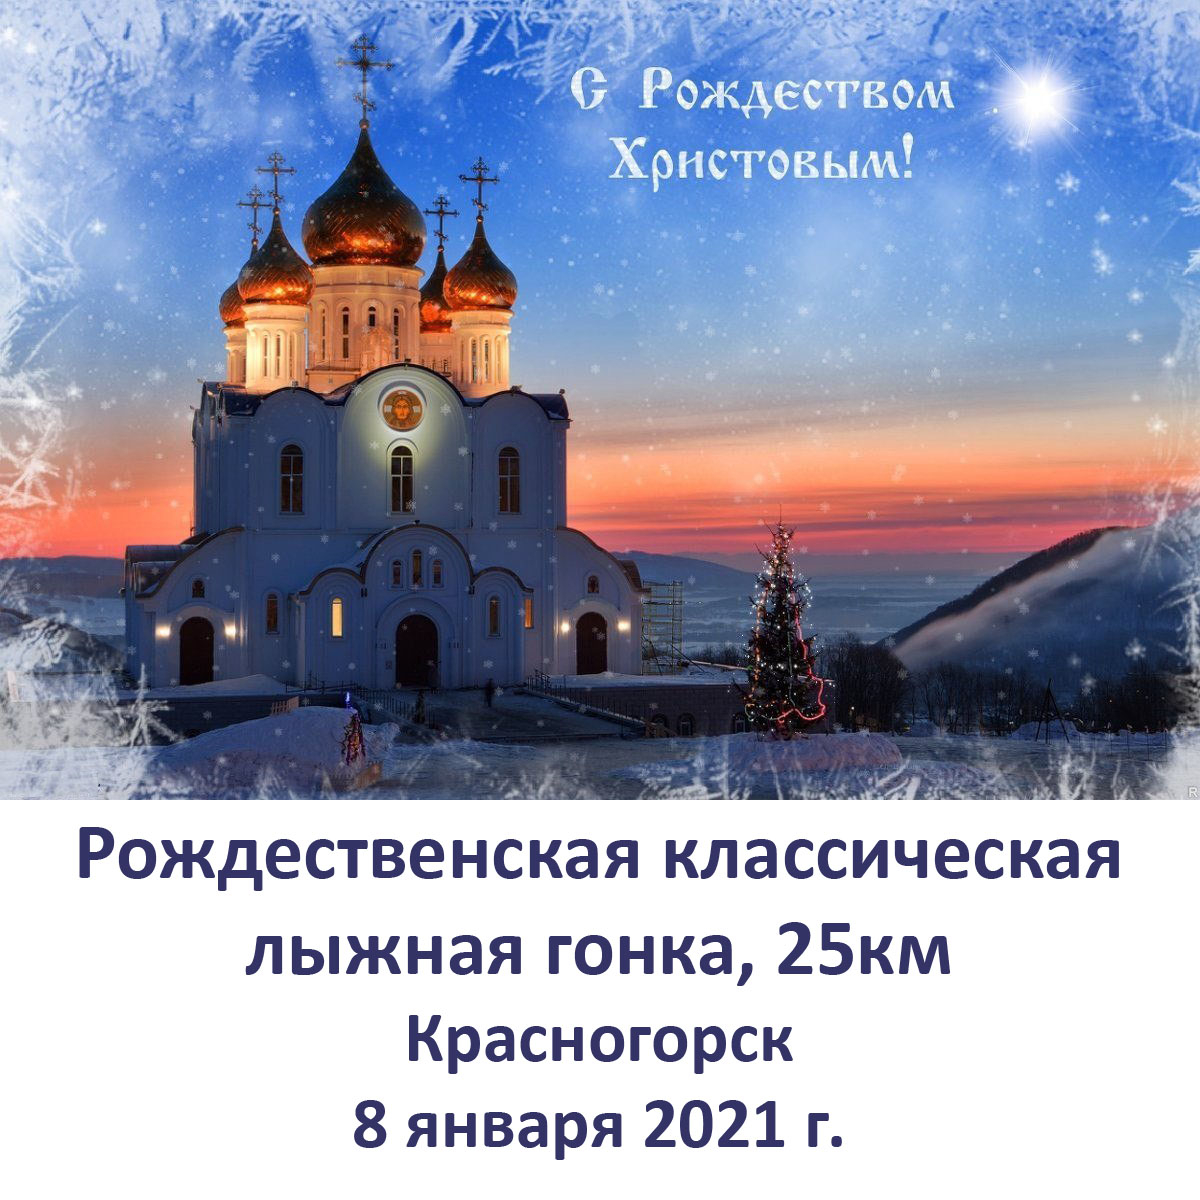 Рождественская классическая лыжная гонка 25км в Красногорске